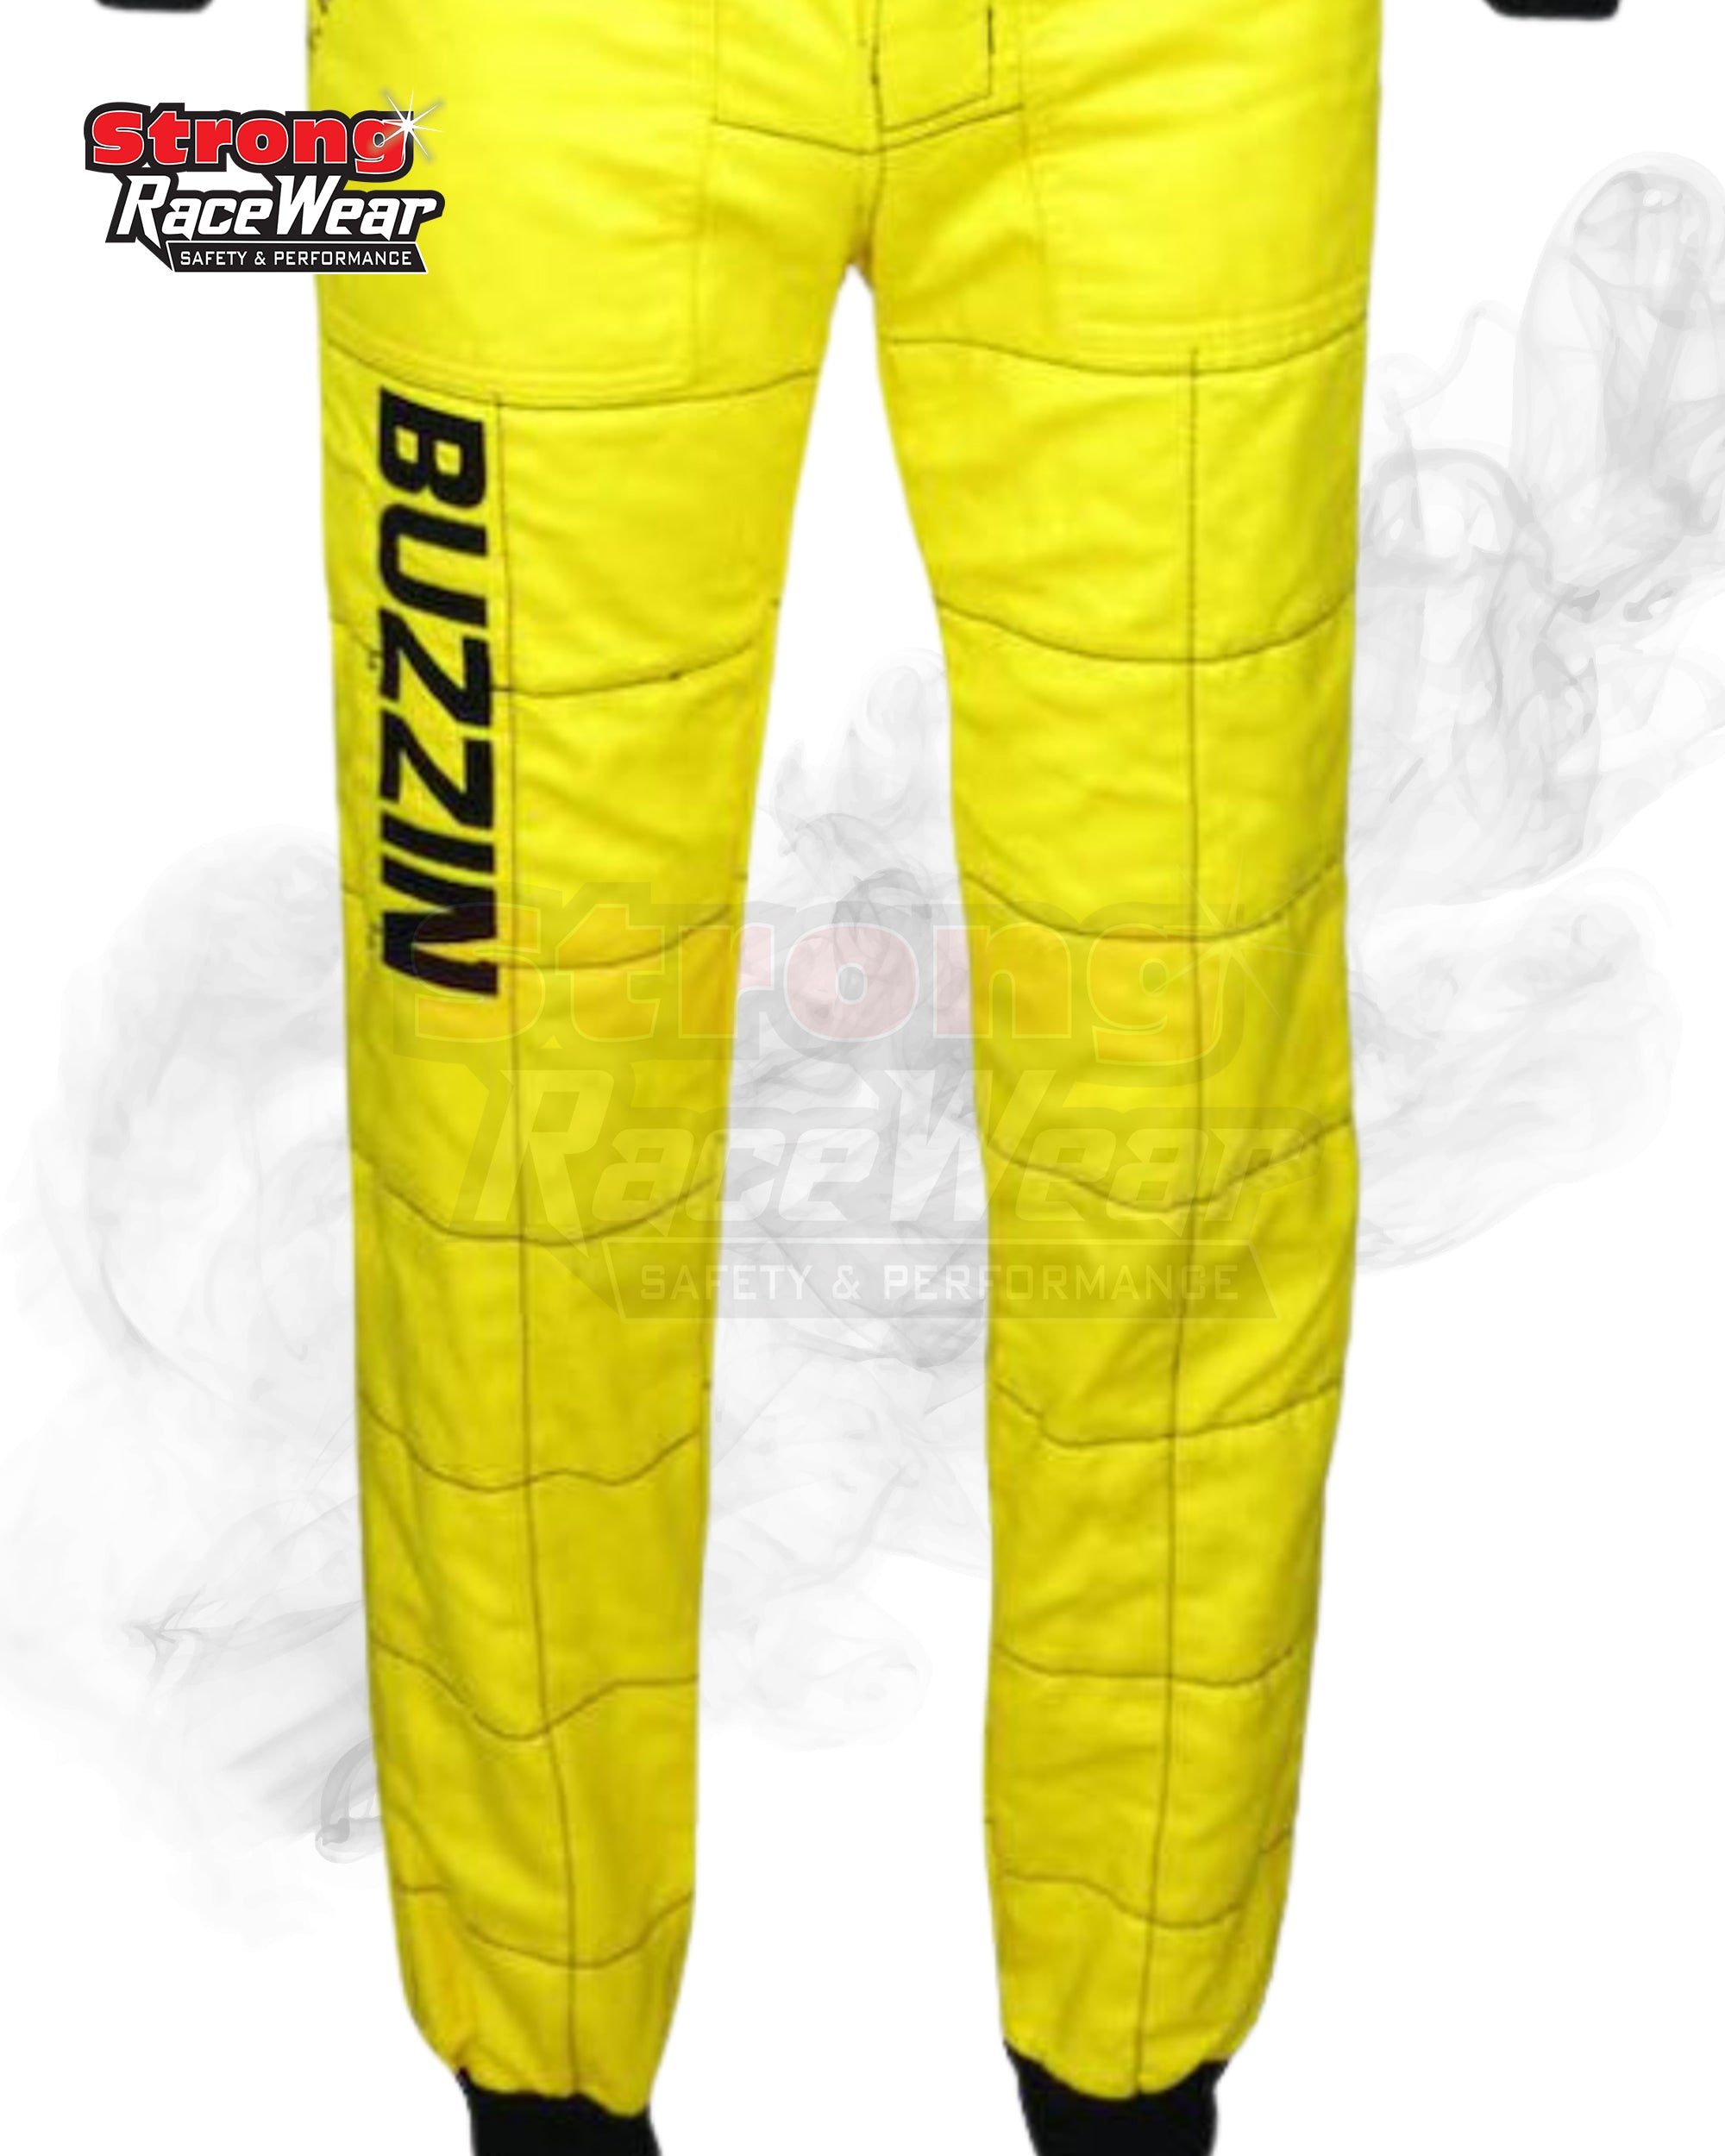 2000 Heinz Harald Frentzen Jordan F1 Racing Suit